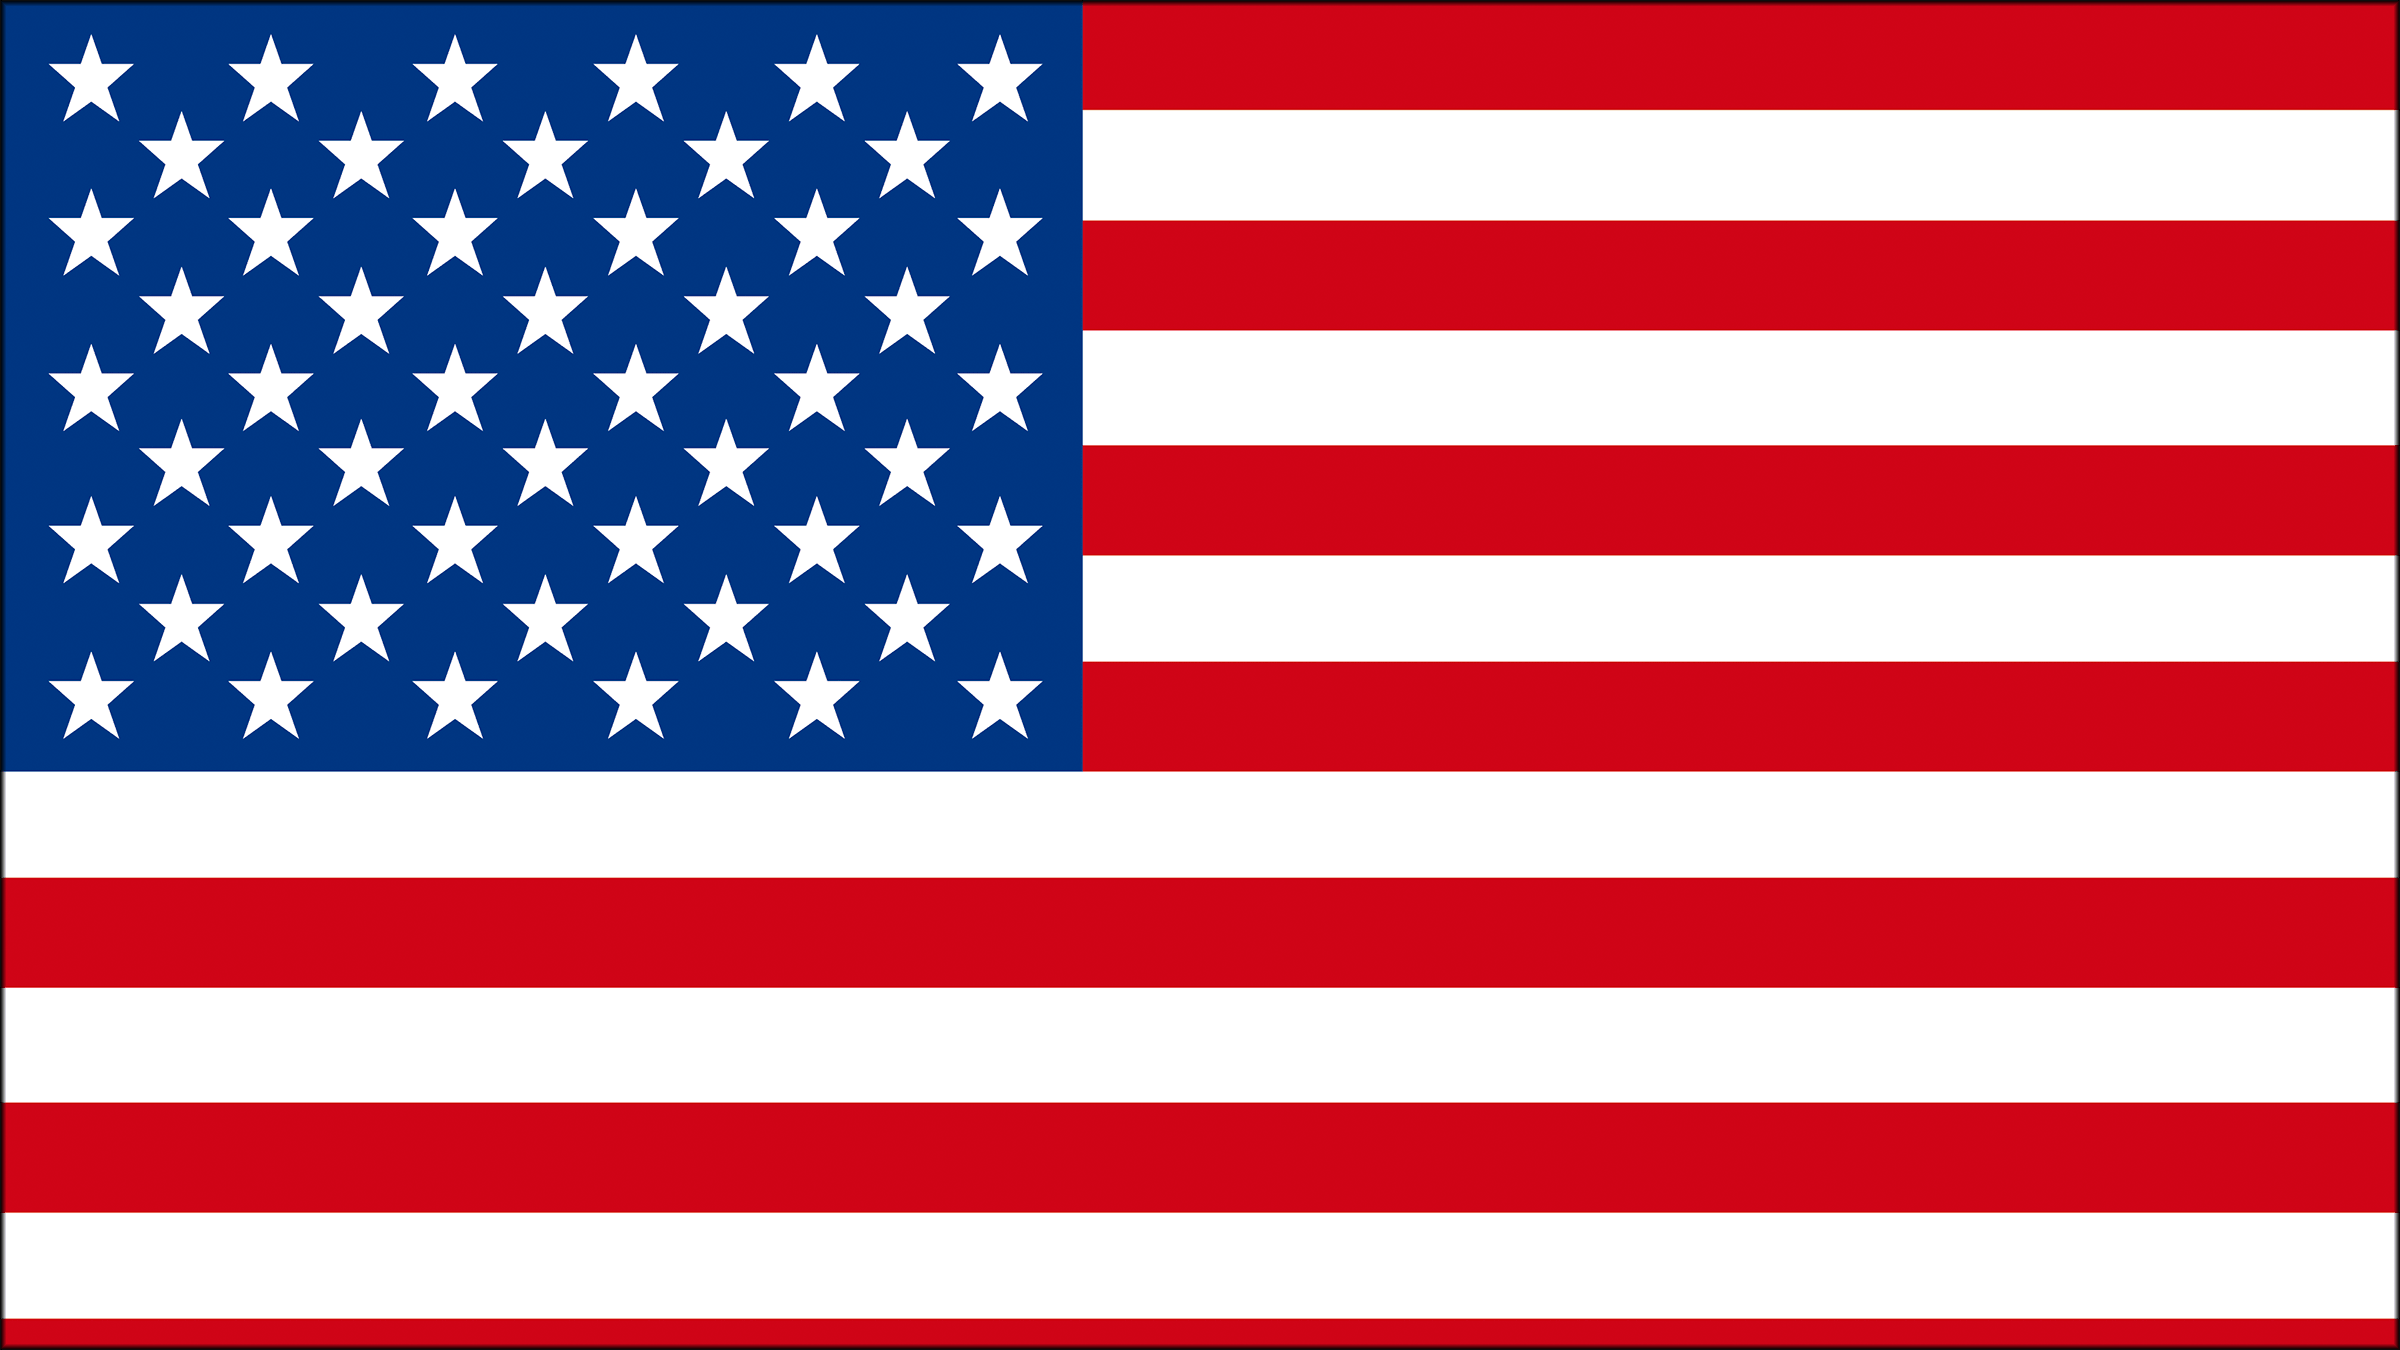 Las Barras Y Las Estrellas En La Bandera De Estados Unidos